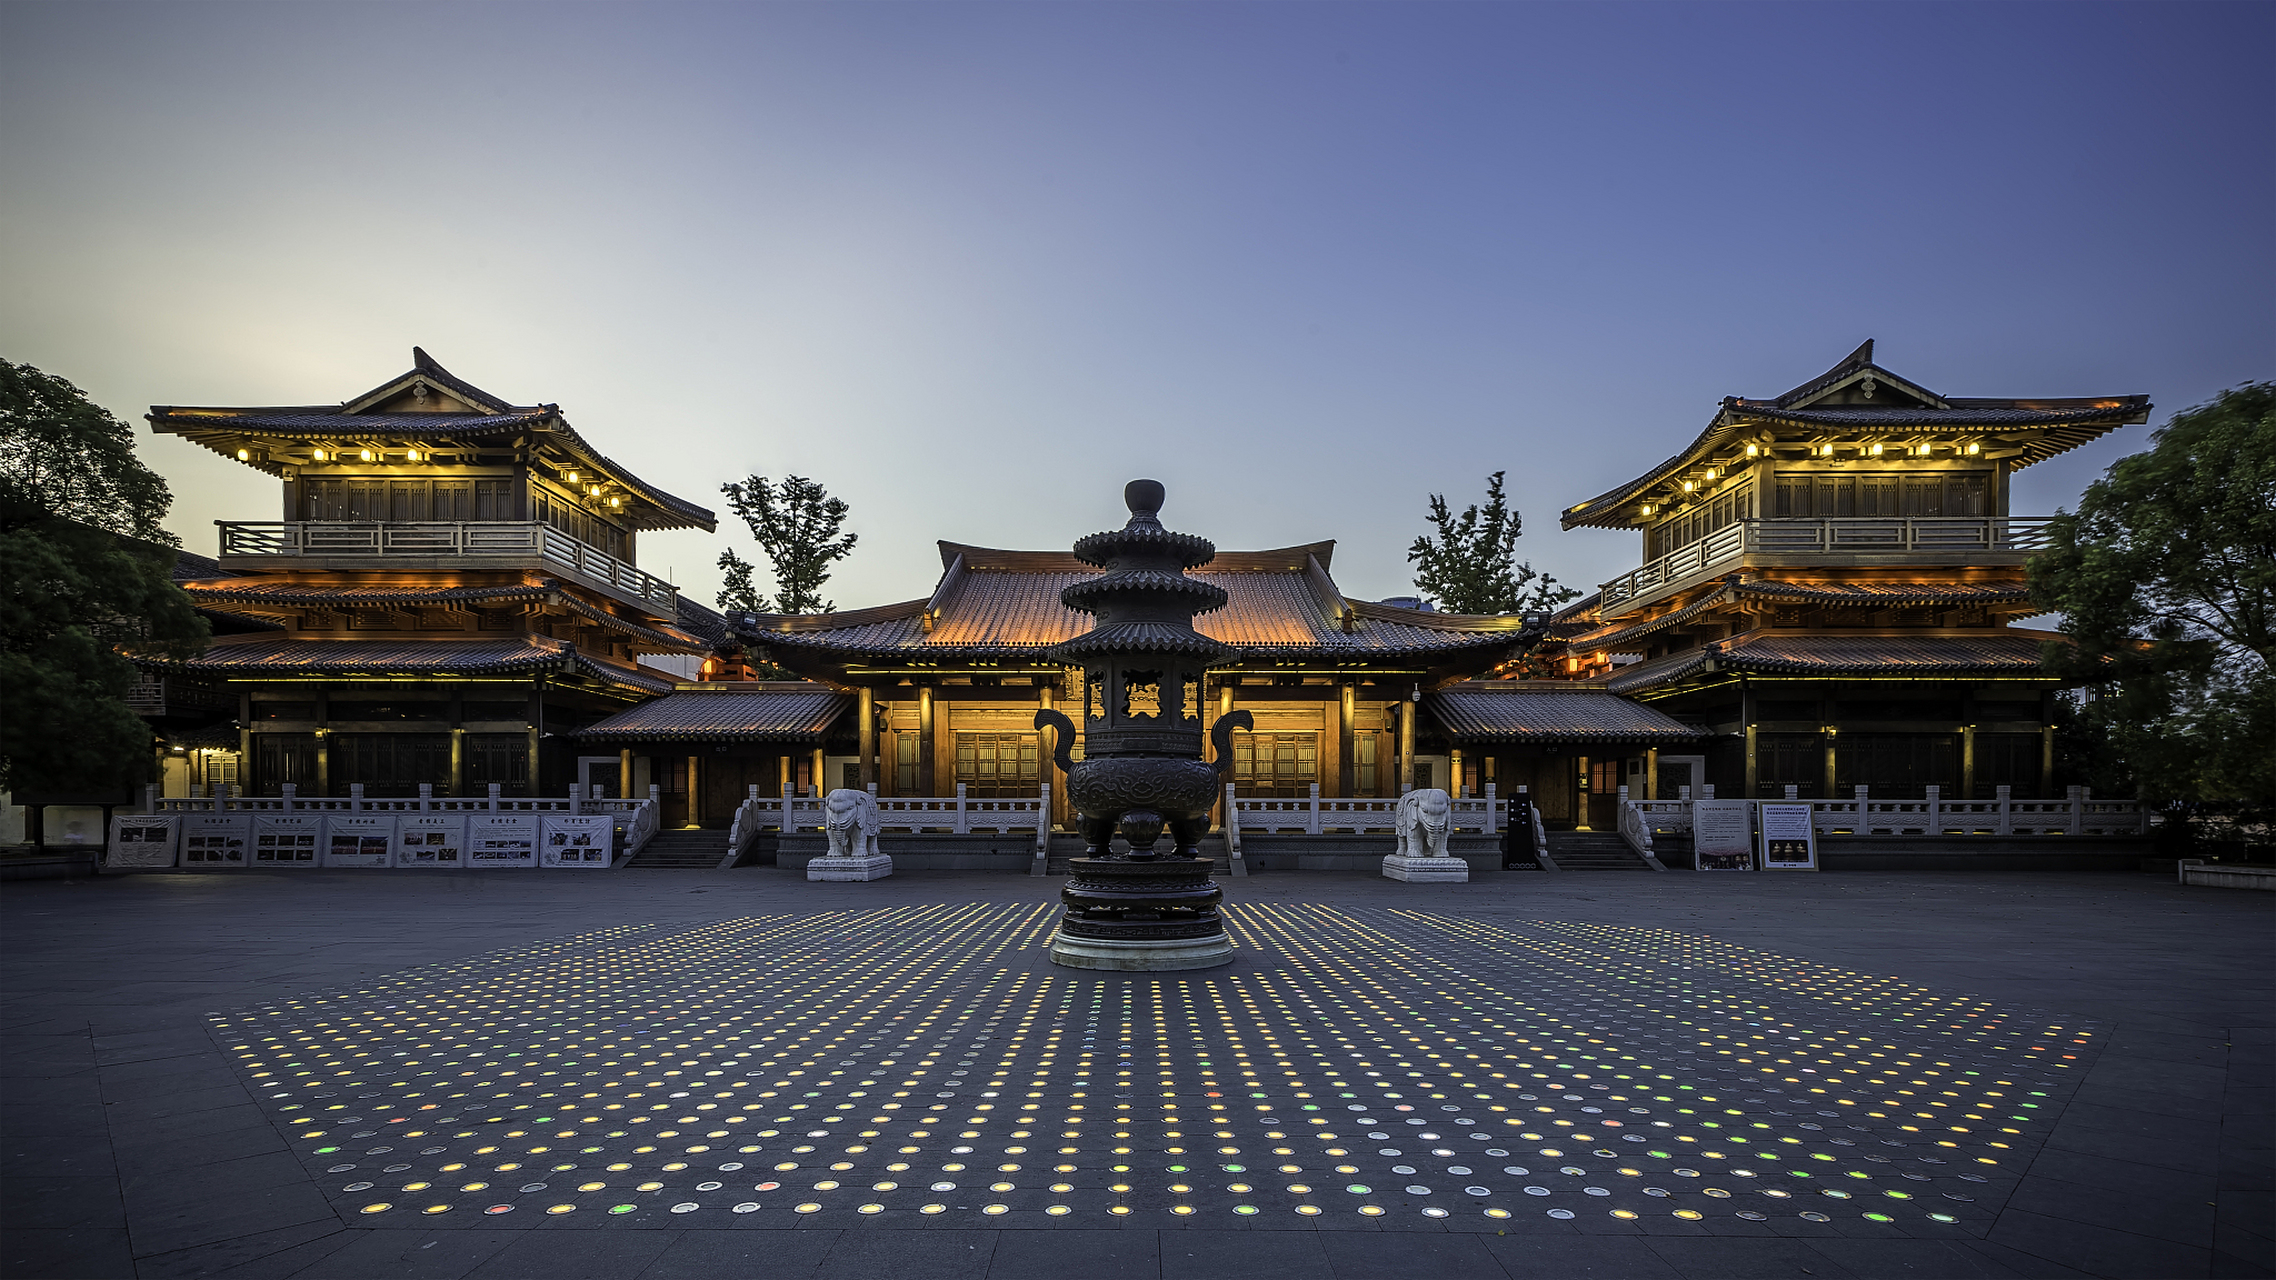 西安香积寺是一座历史悠久且地位重要的禅宗寺庙,是中日两国净土宗